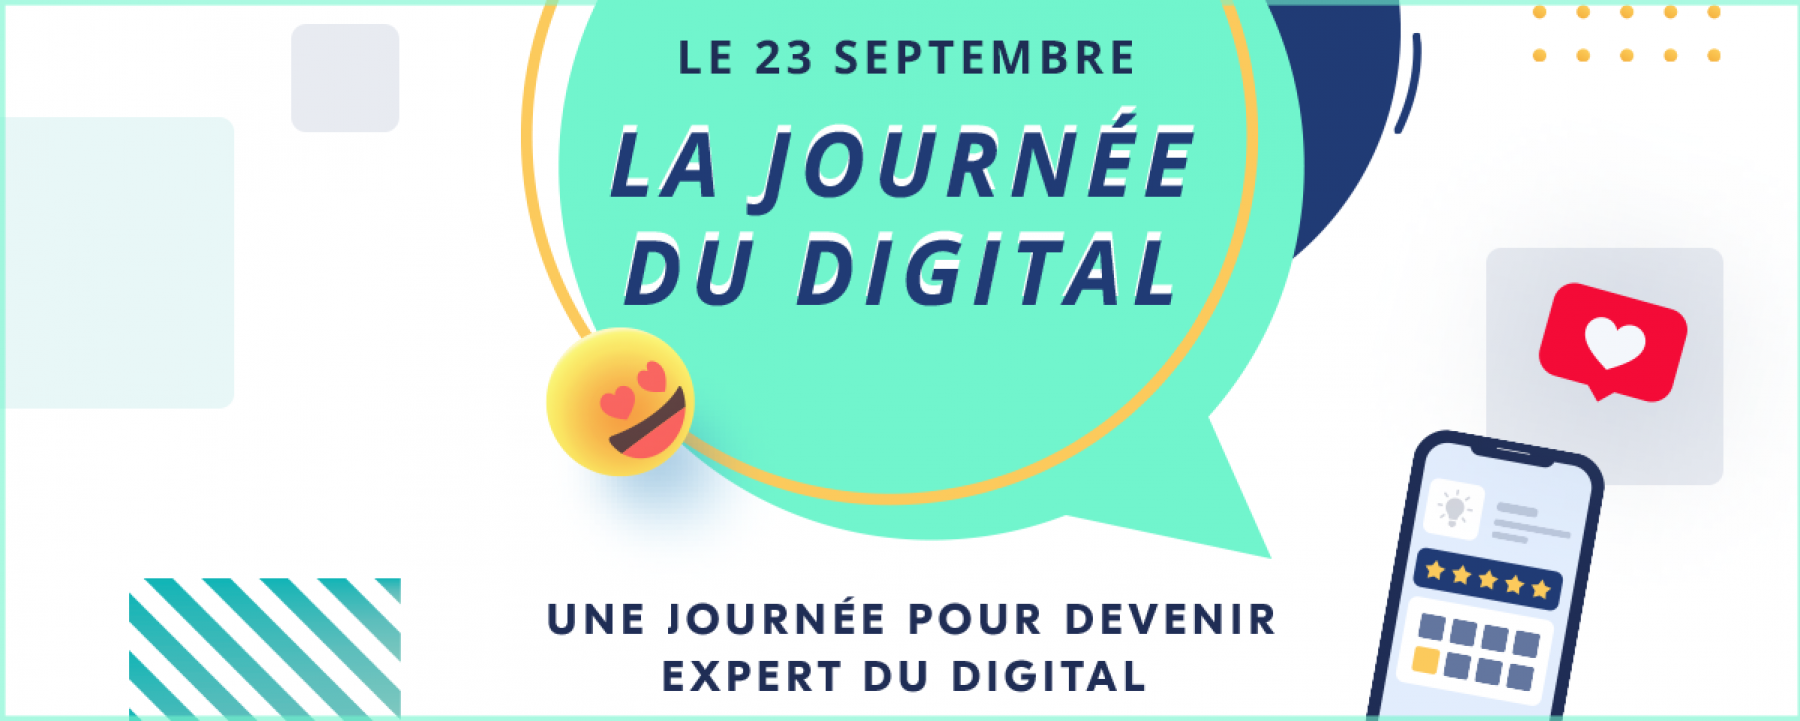 La journée du digital : Une journée pour devenir expert du digital  le 23 septembre 2021